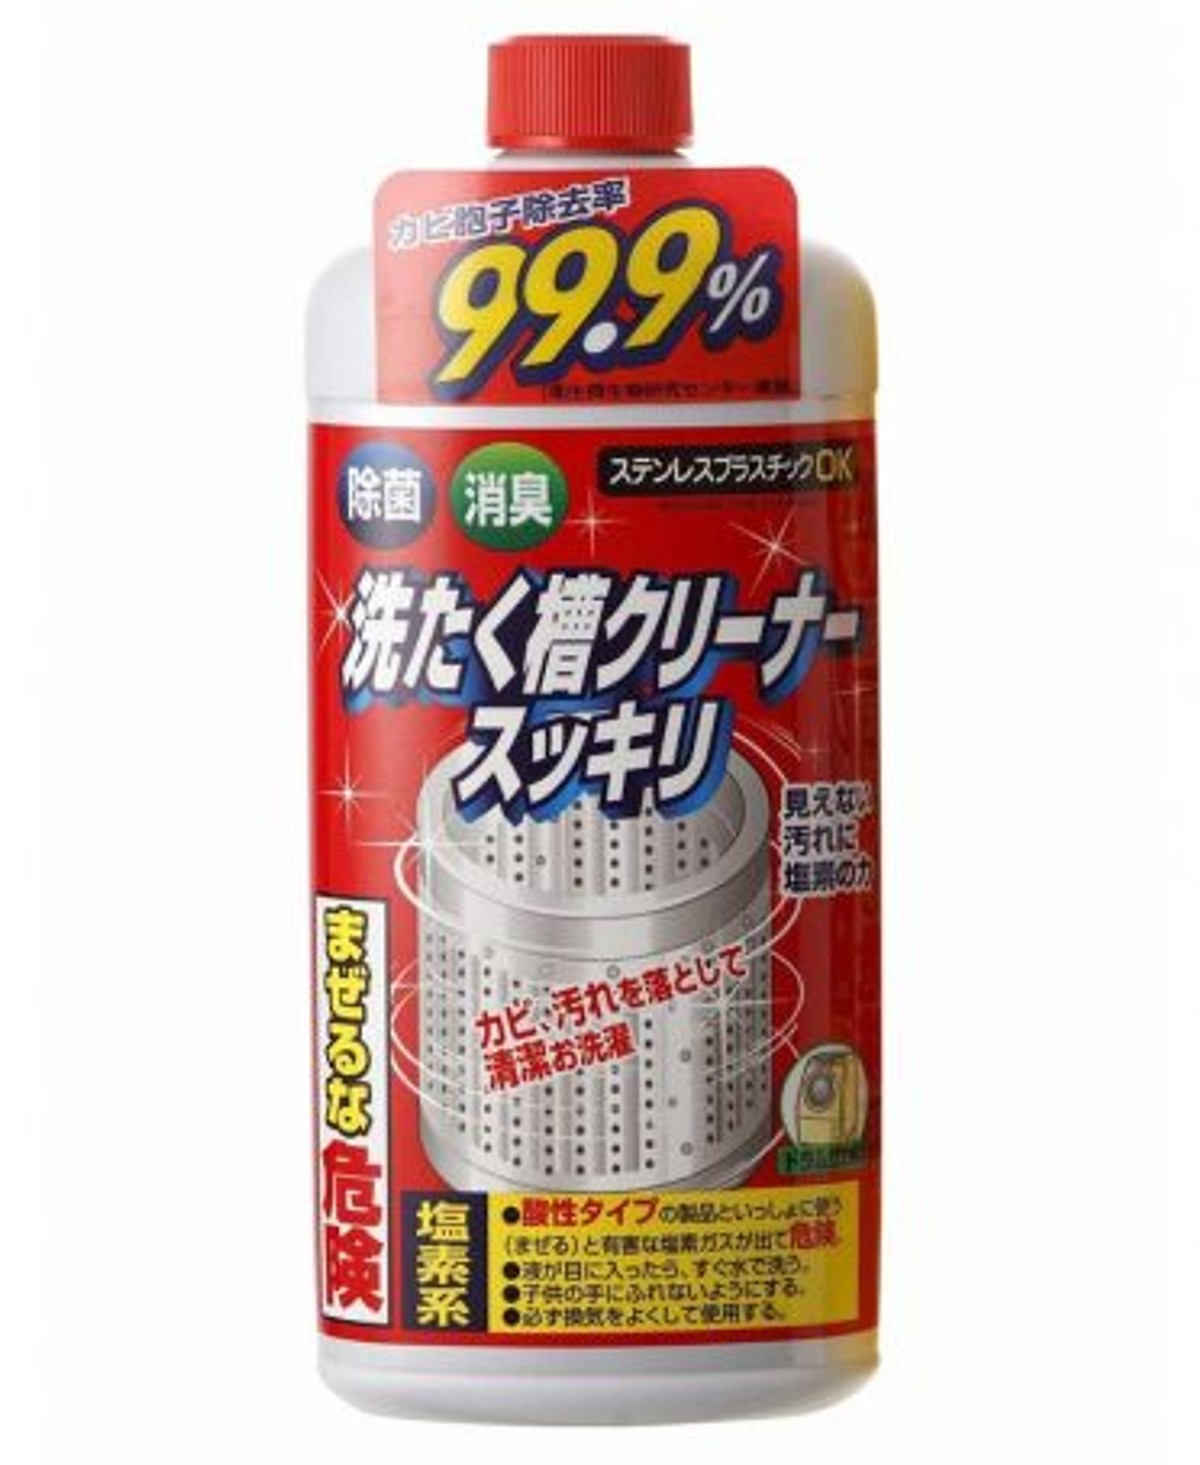 Combo Nước tẩy vệ sinh lồng máy giặt Rocket + Thuốc viên diệt gián nội địa Nhật Bản